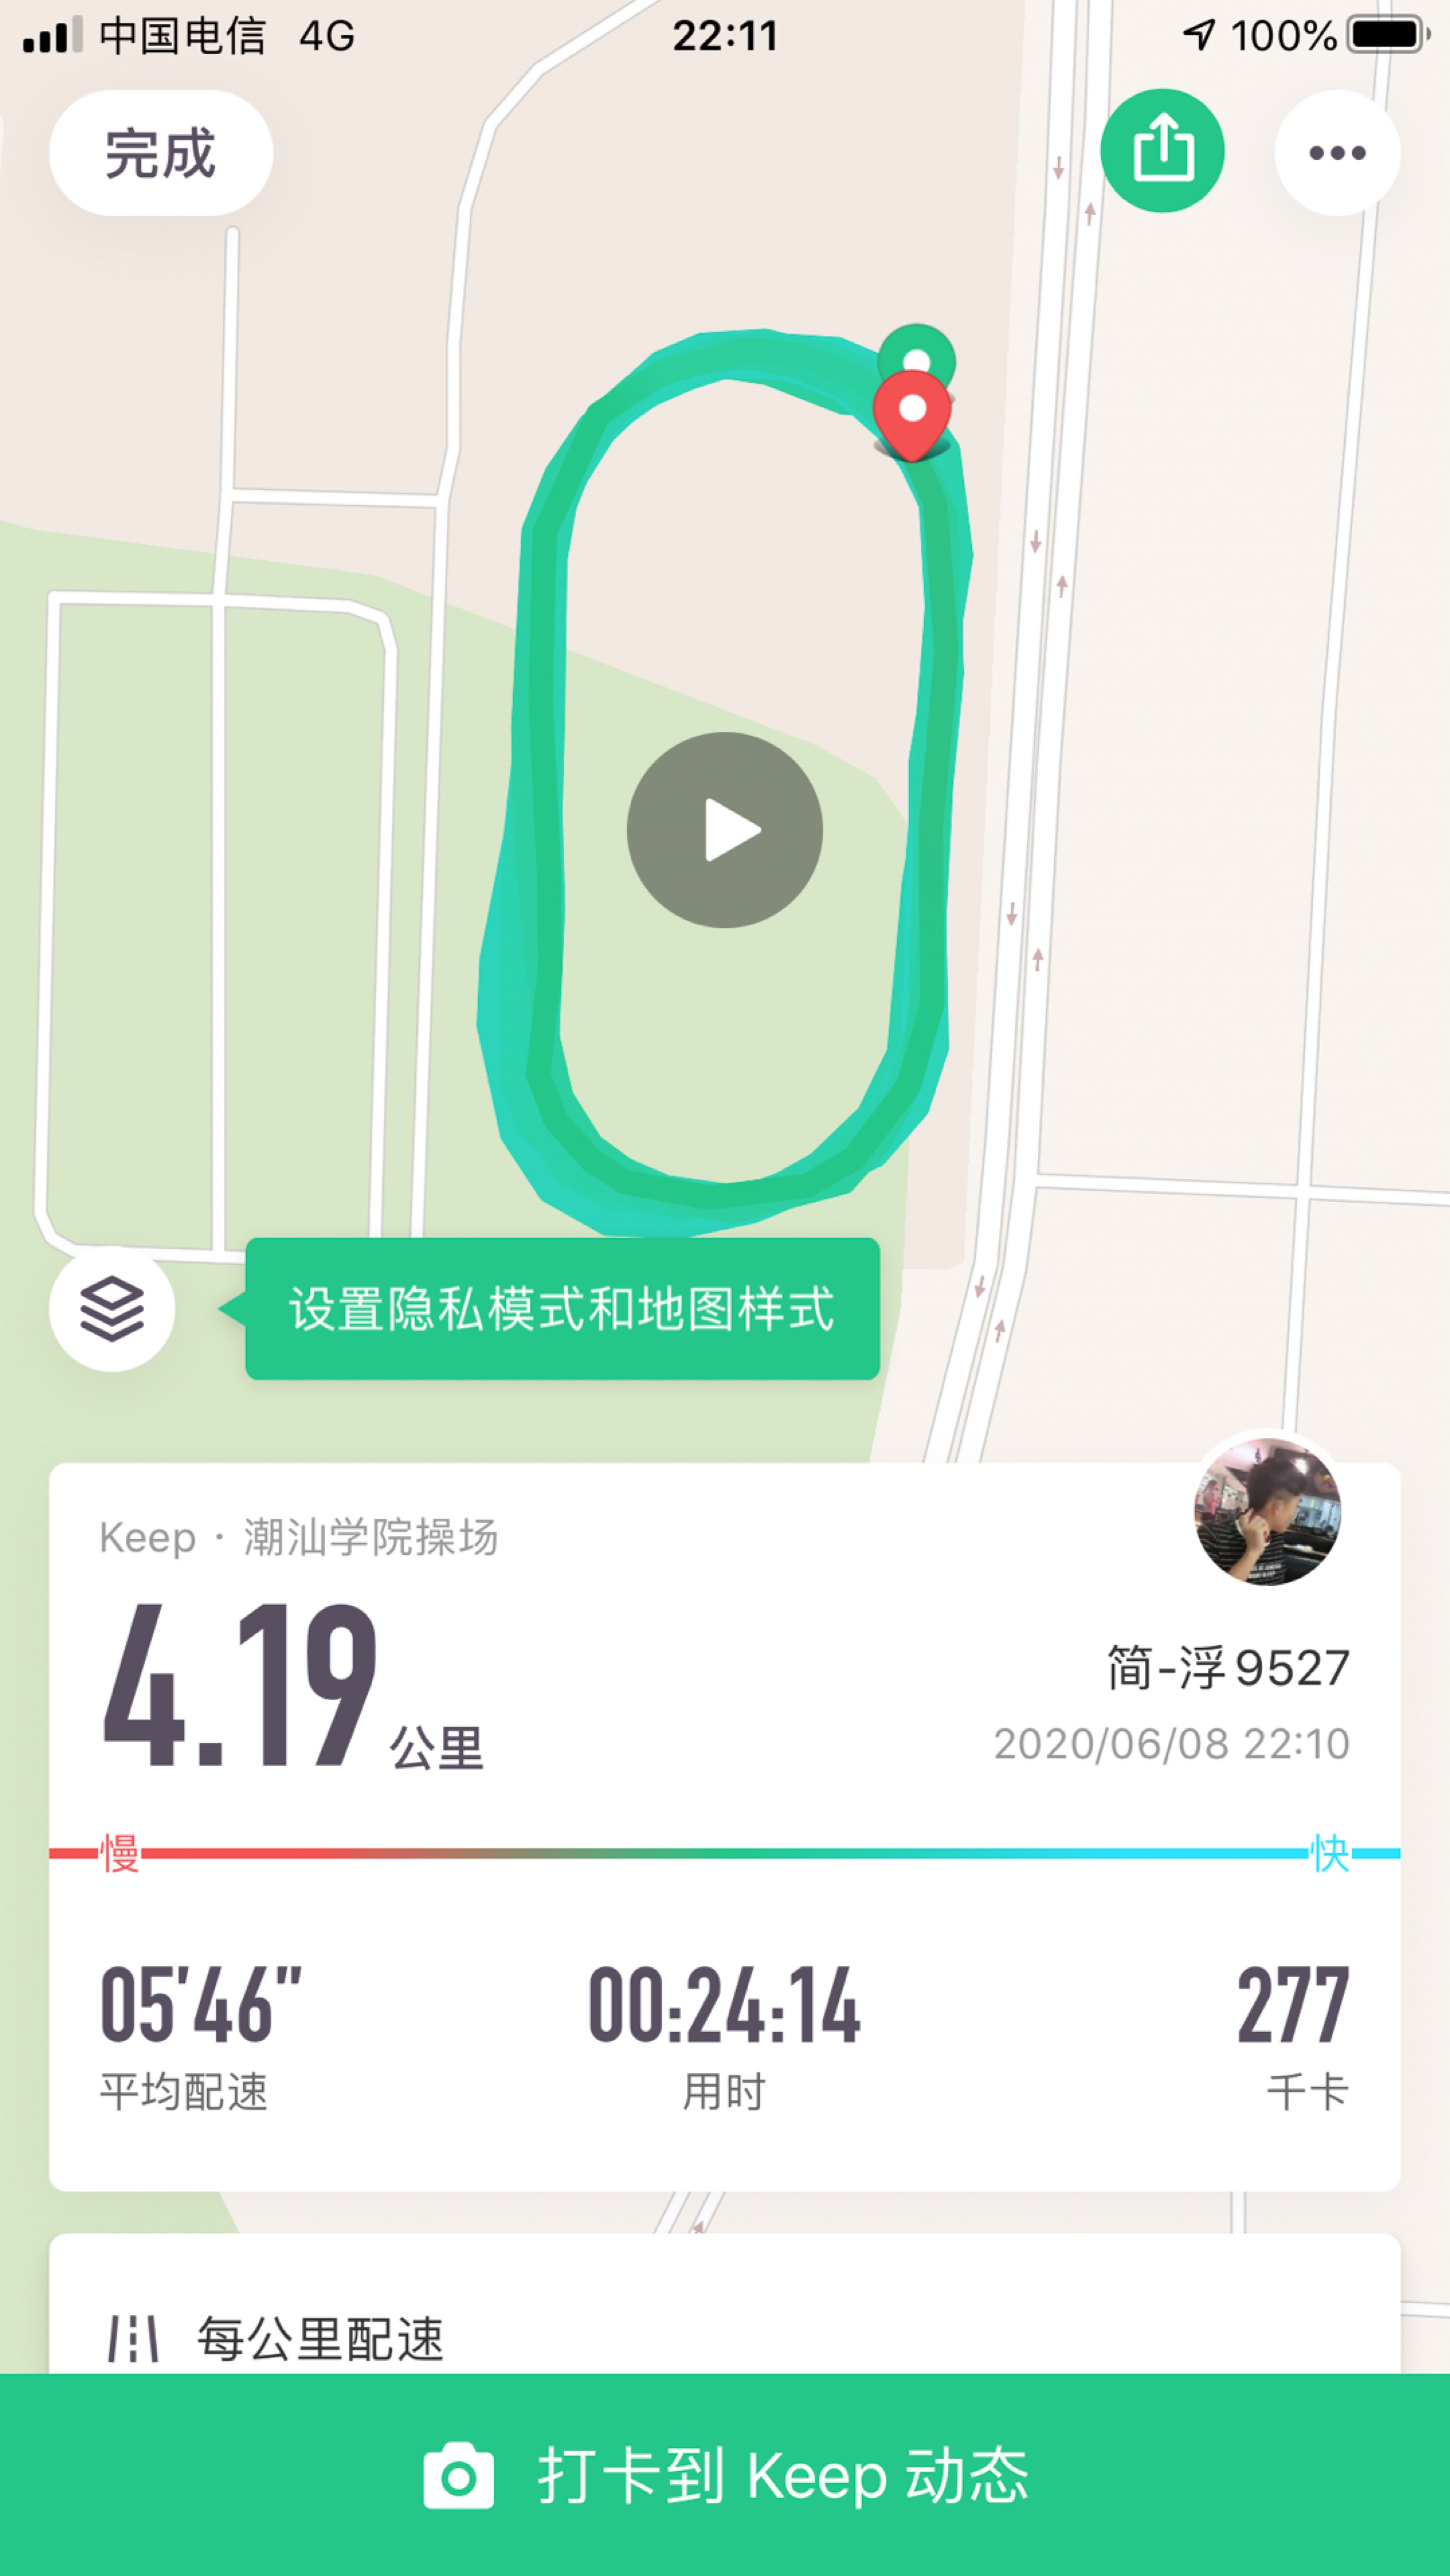 19公里, 24分14秒  完成 潮汕学院操场  获得了连续2周徽章  开启跑步